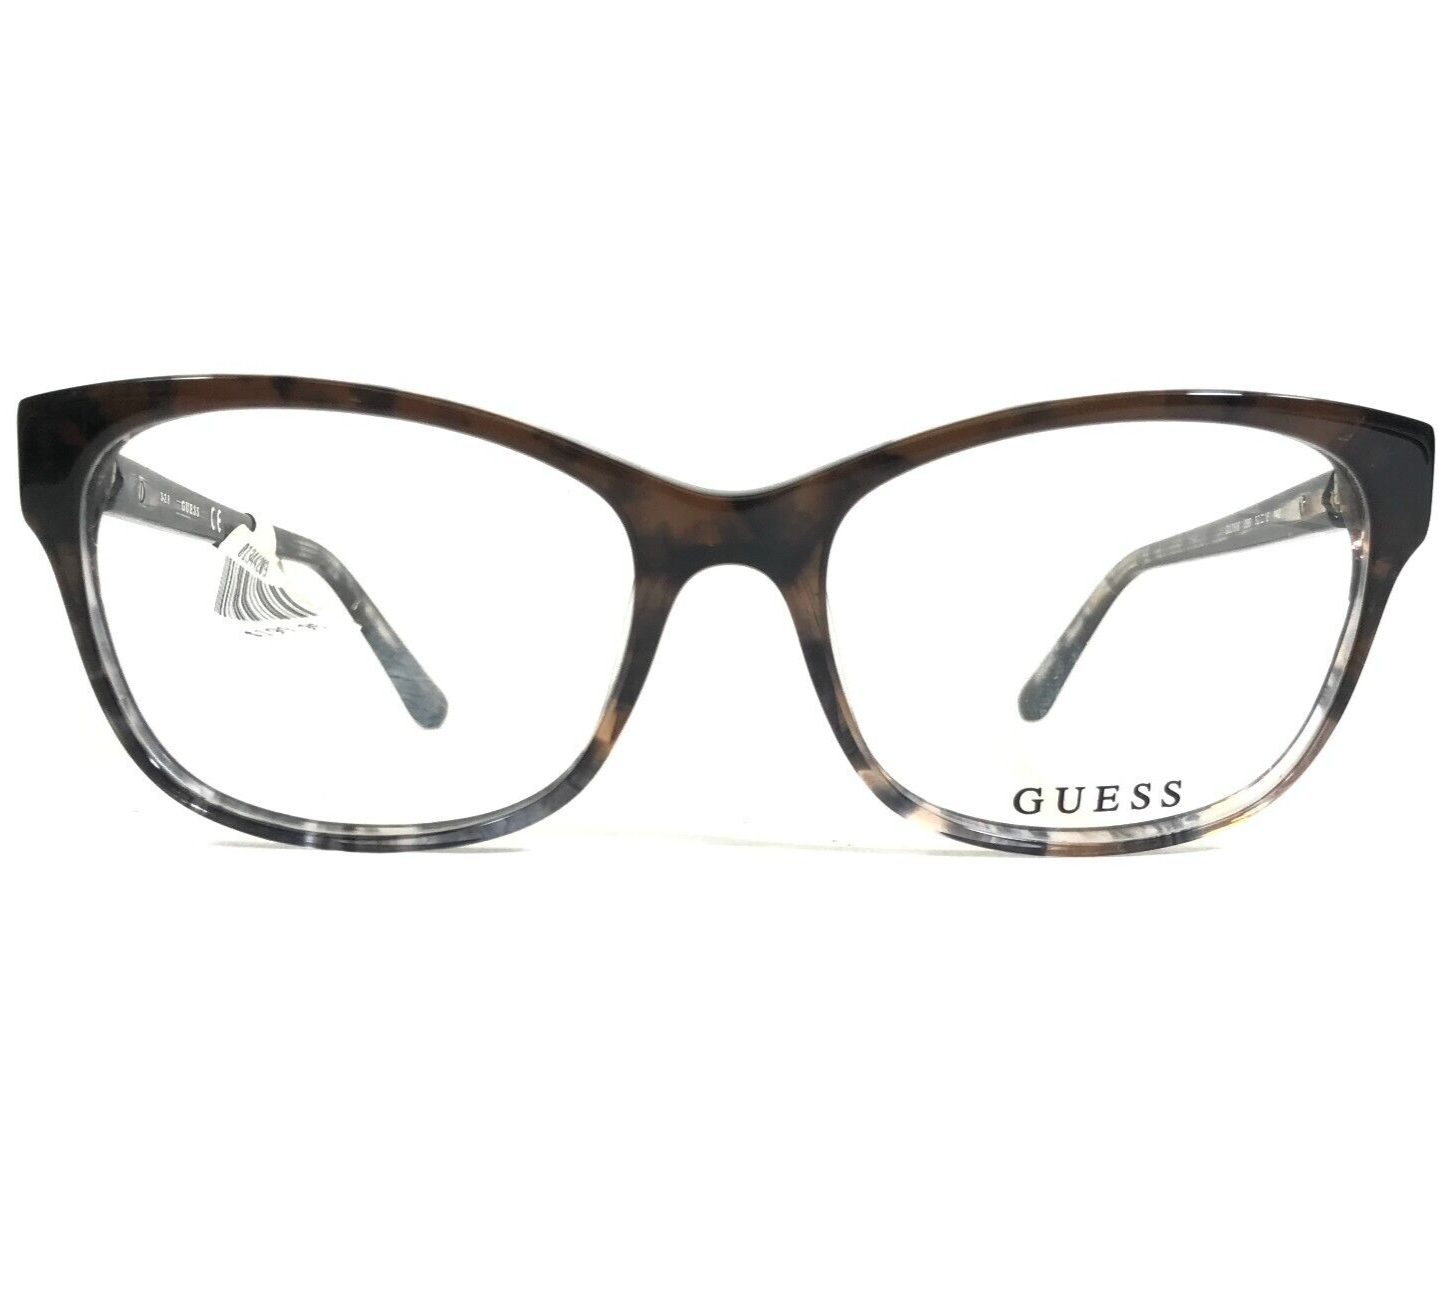 Primary image for Guess Eyeglasses Frames GU2696 056 Tortoise Clear Cat Eye Full Rim 52-16-140